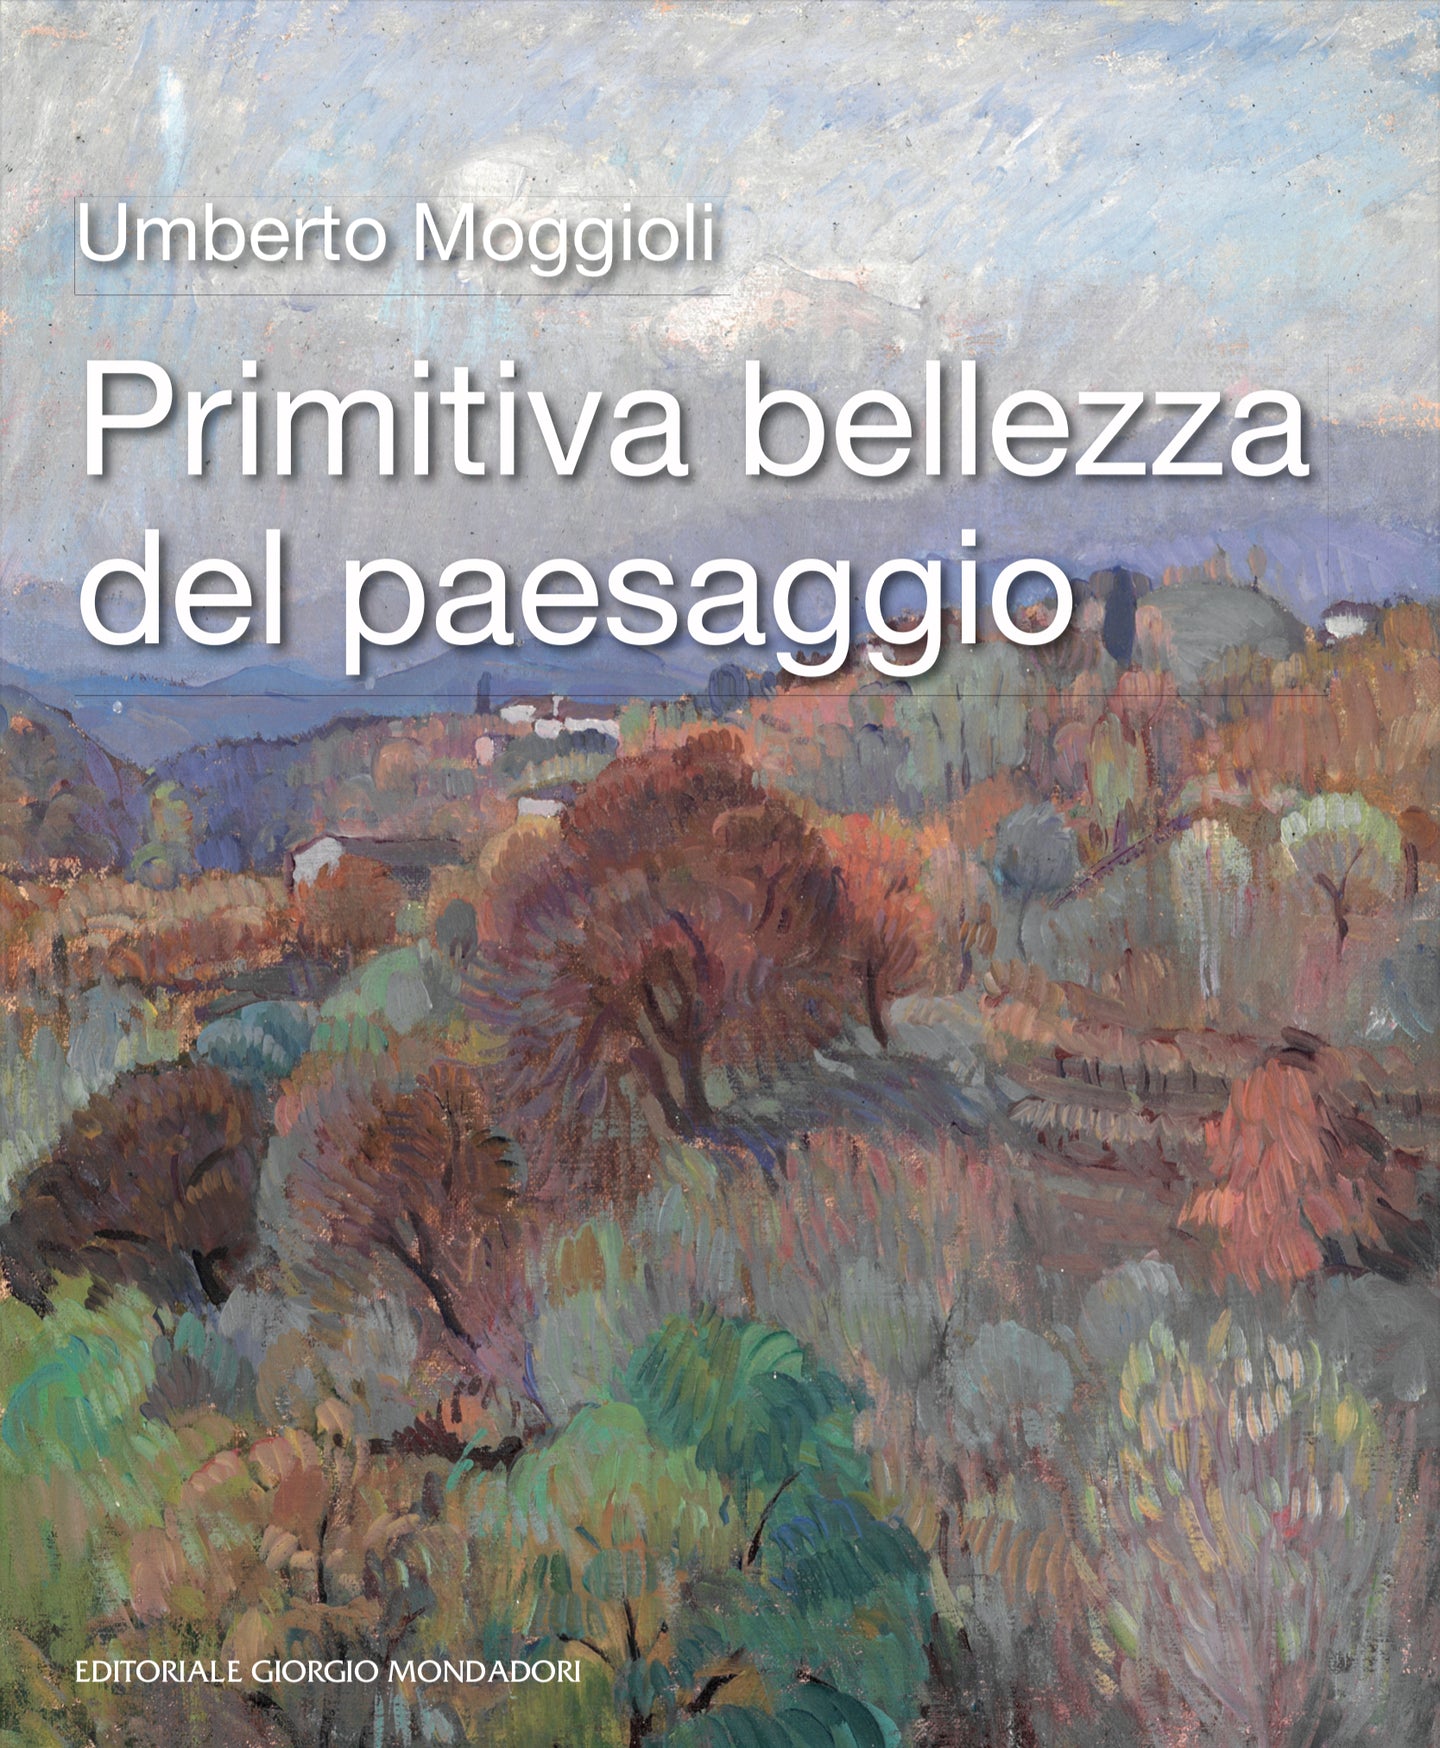 Umberto Moggioli: Primitiva bellezza del paesaggio